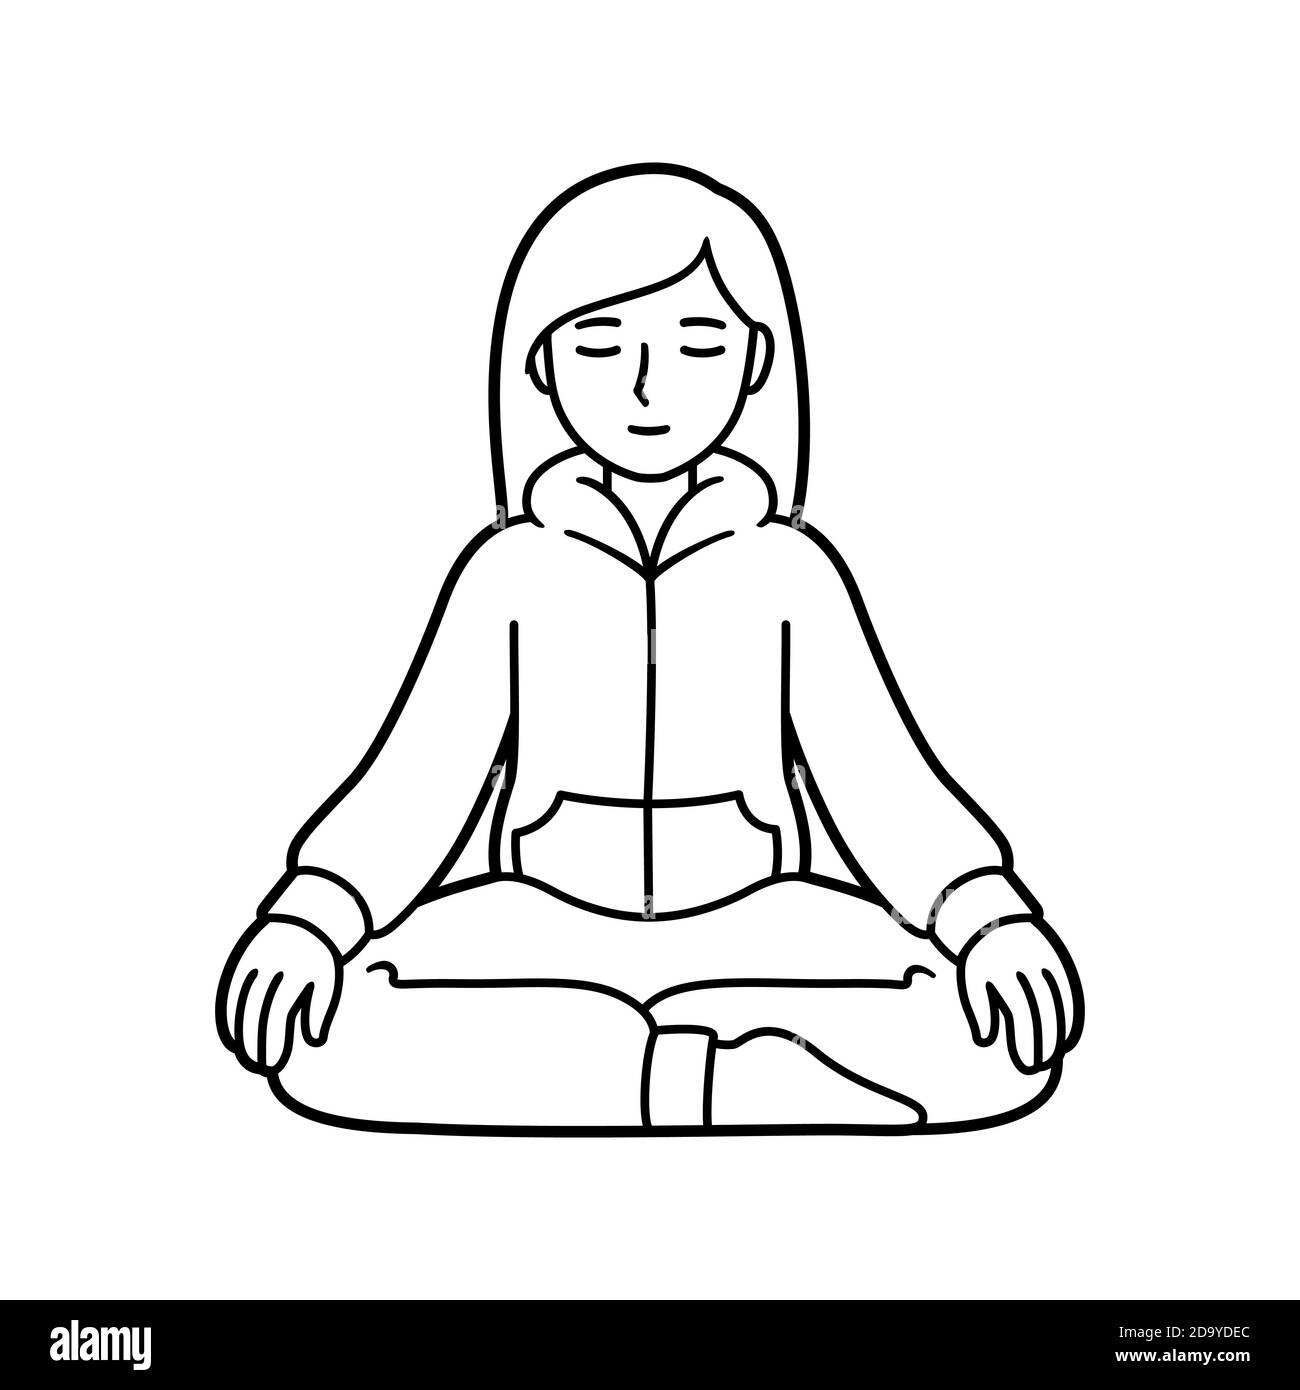 Junge Frau sitzt in Meditation in bequemen Hauskleidung. Einfache schwarz-weiße Linie Art Zeichnung, Vektor-Illustration. Stock Vektor